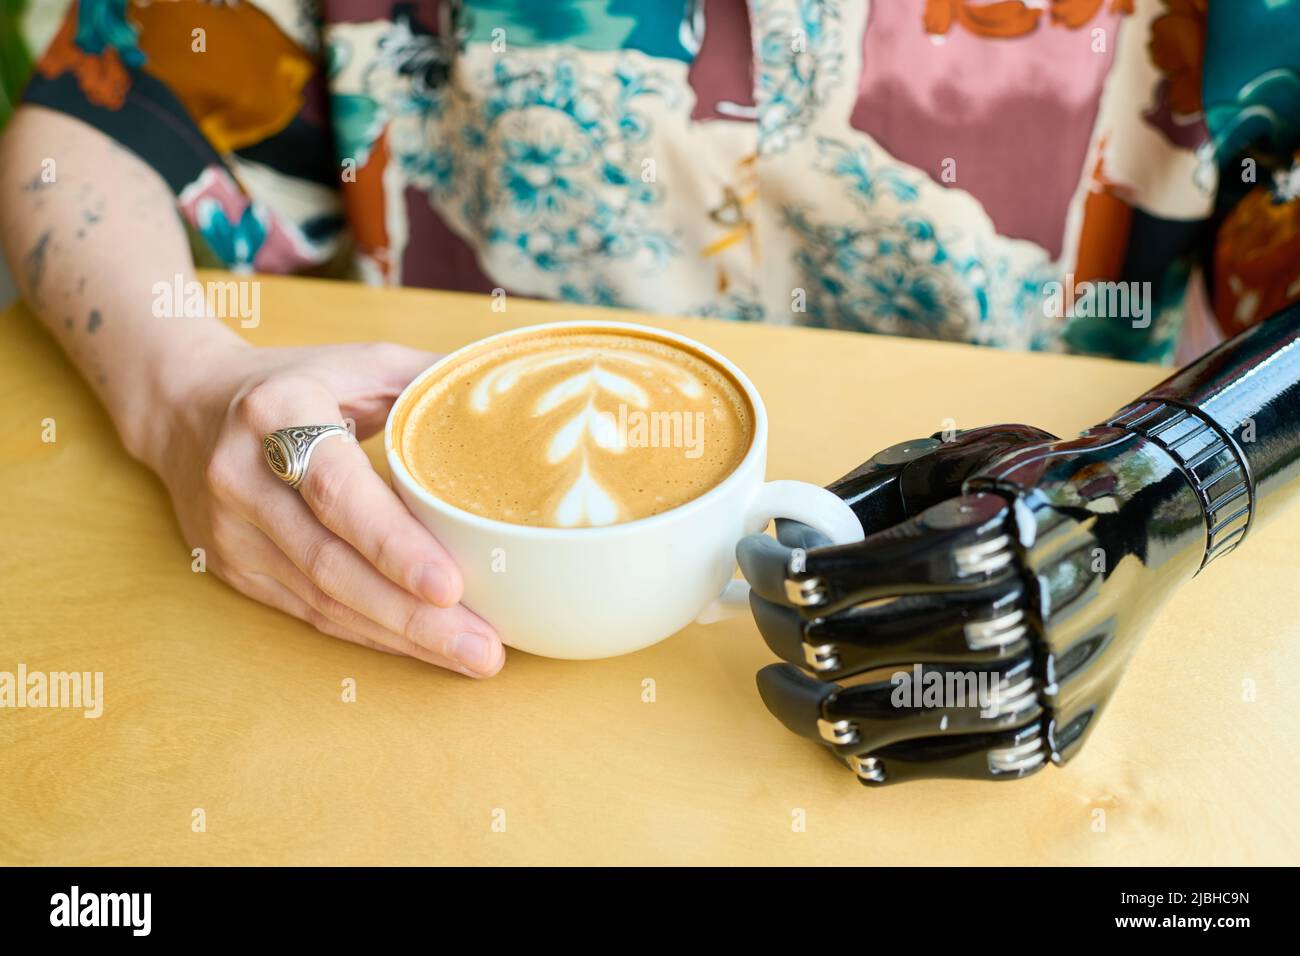 Junge, moderne Frau mit myoelektrischem Arm, die im Café eine Tasse Cappuccino hält, der mit flauschigem Milchschaum dekoriert ist Stockfoto